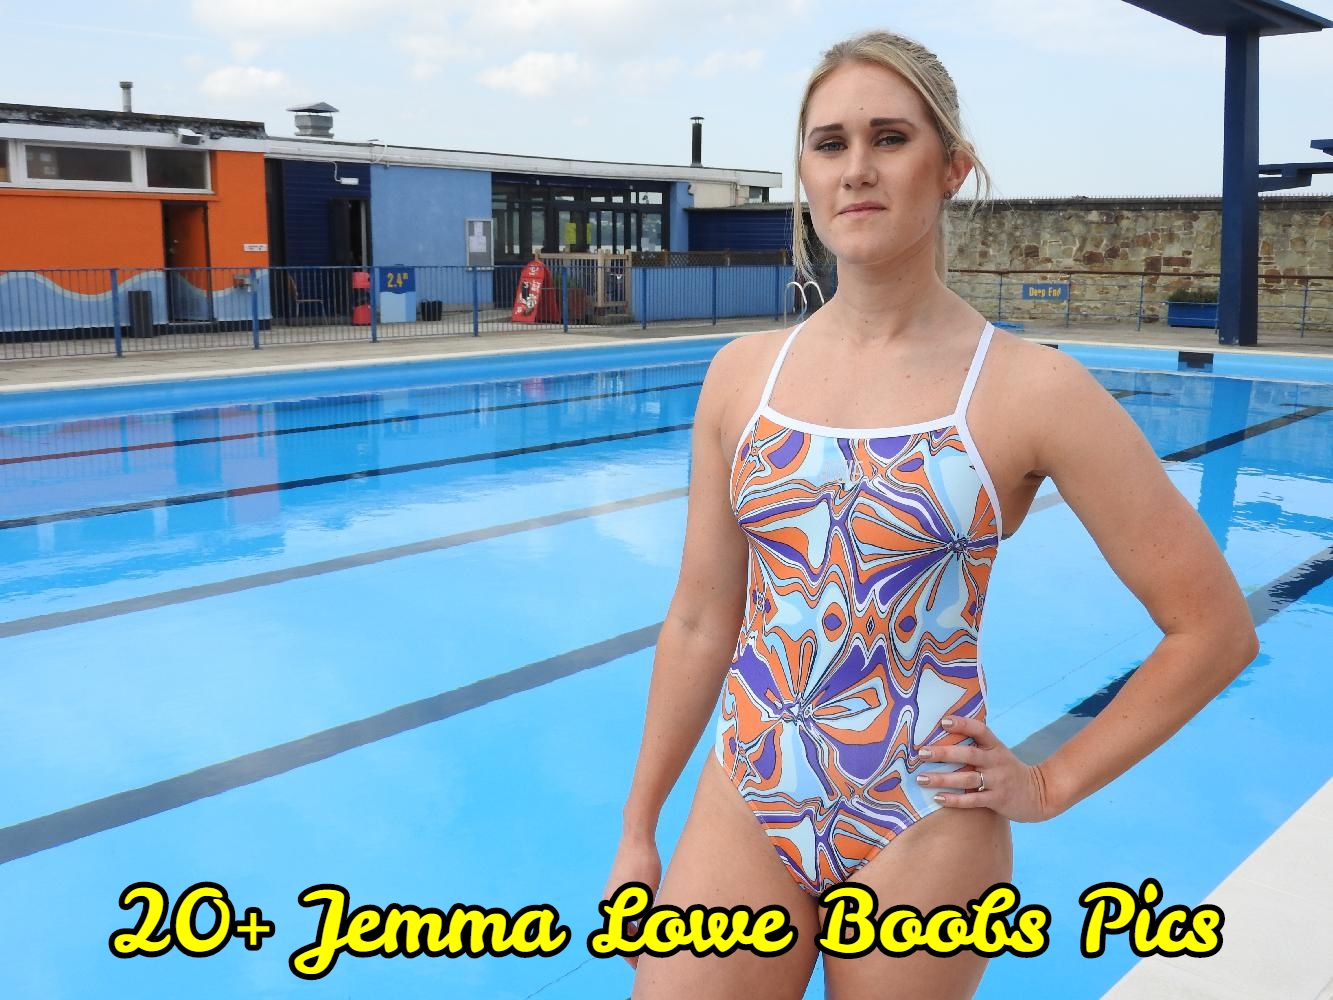 Jemma Lowe Boobs Pics